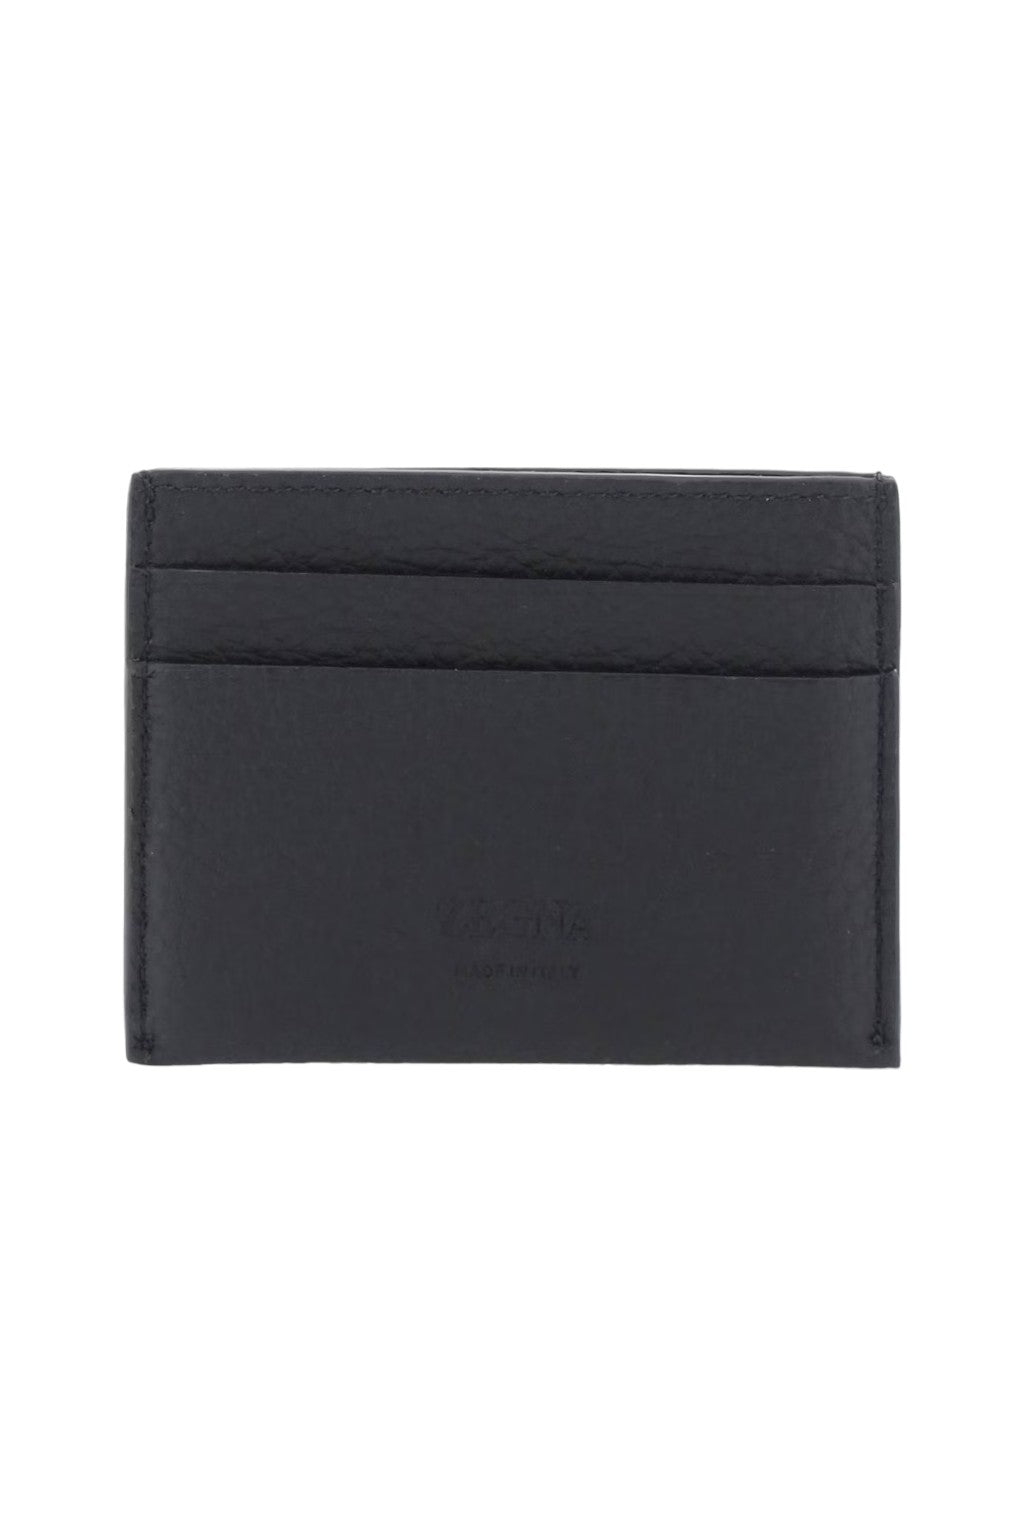 Zegna Leather Cardholder